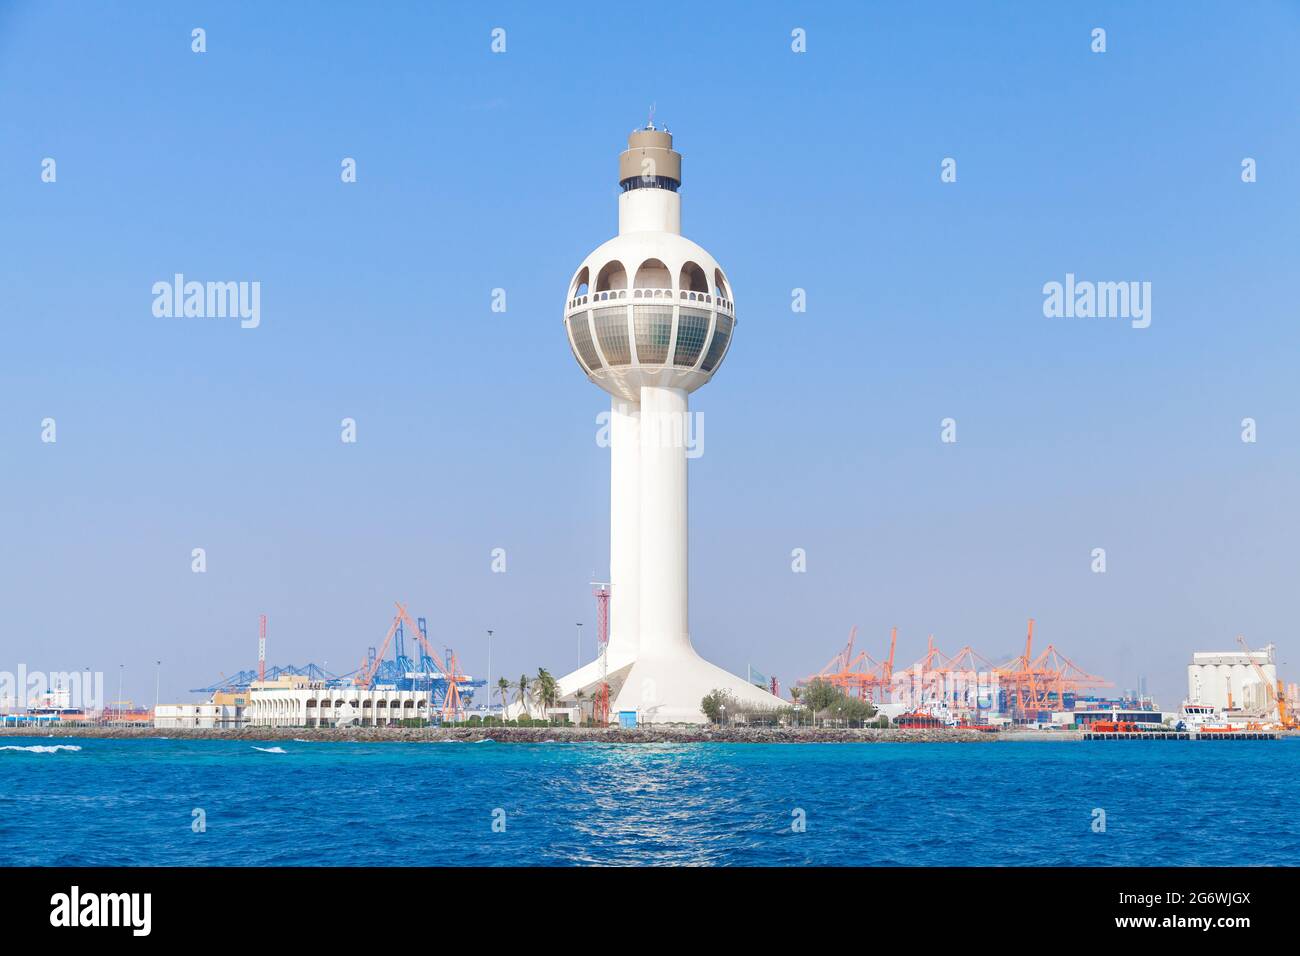 La torre bianca di controllo del traffico è un punto di riferimento principale e un simbolo del porto di Jeddah, Arabia Saudita Foto Stock